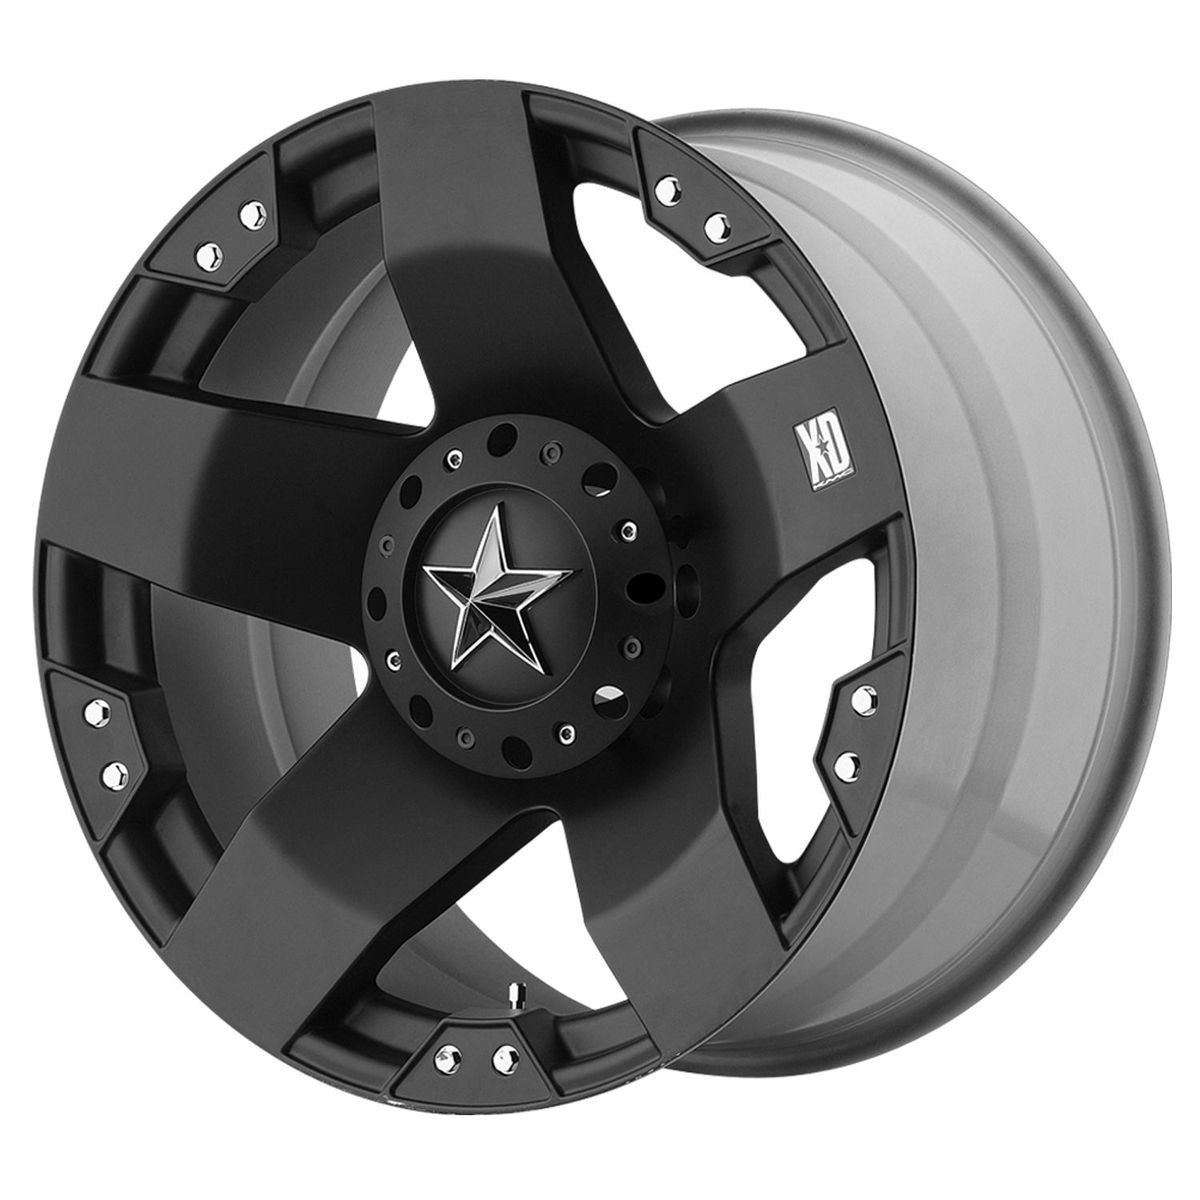 XD Series Rockstar XD775 Matte Black 6 lug Chevy Ford GMC wheels rim